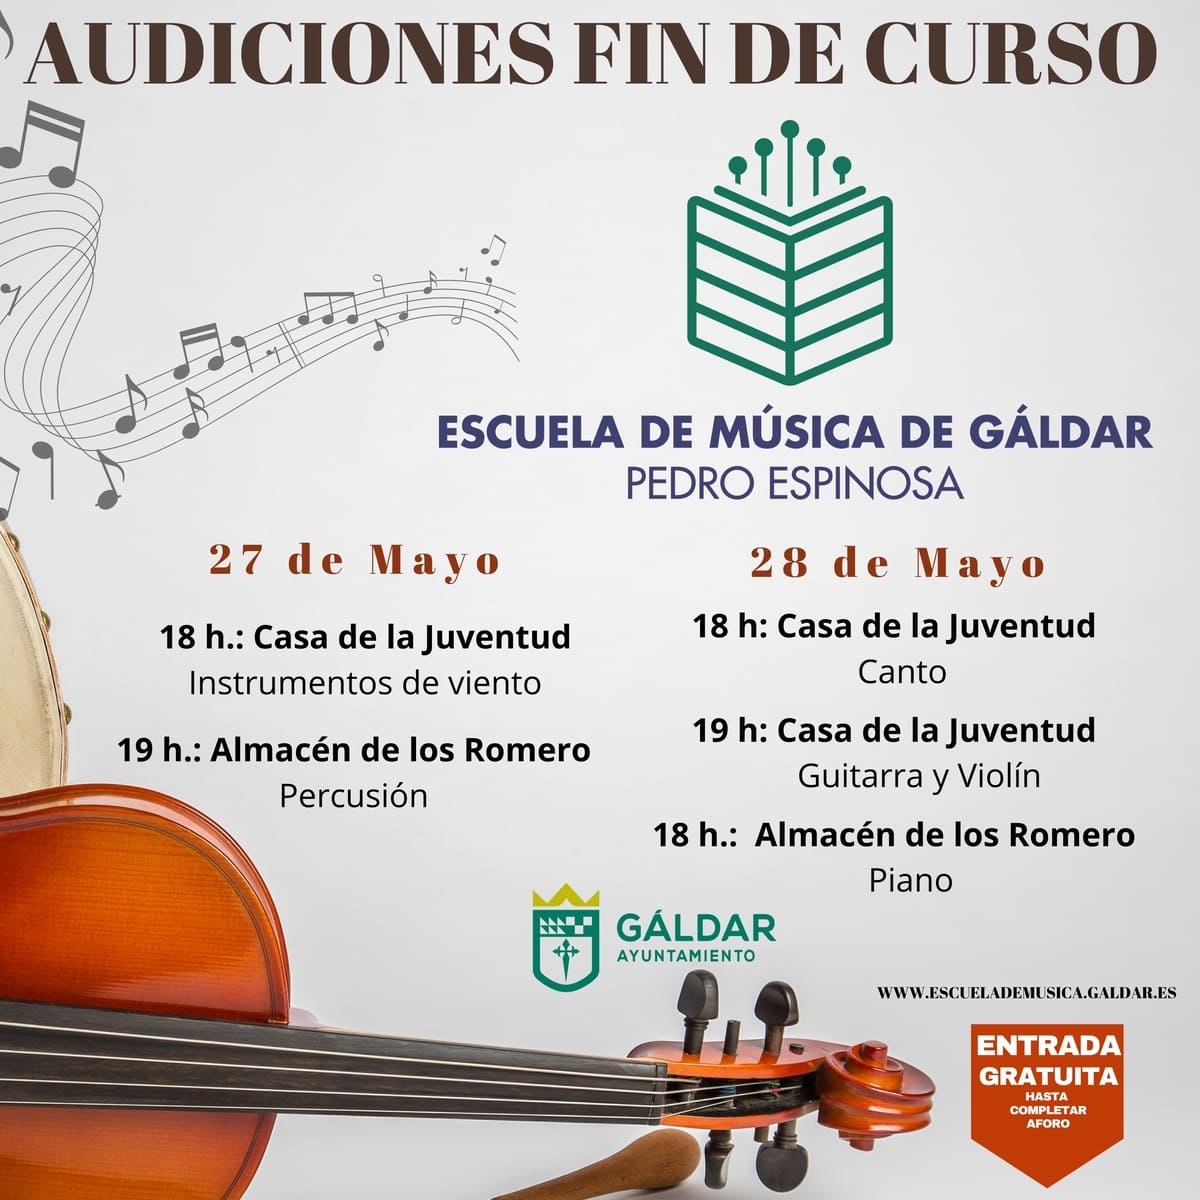 La Escuela Municipal de Música de Gáldar “Pedro Espinosa” comienza el último mes de curso escolar con la celebración de las audiciones de aula